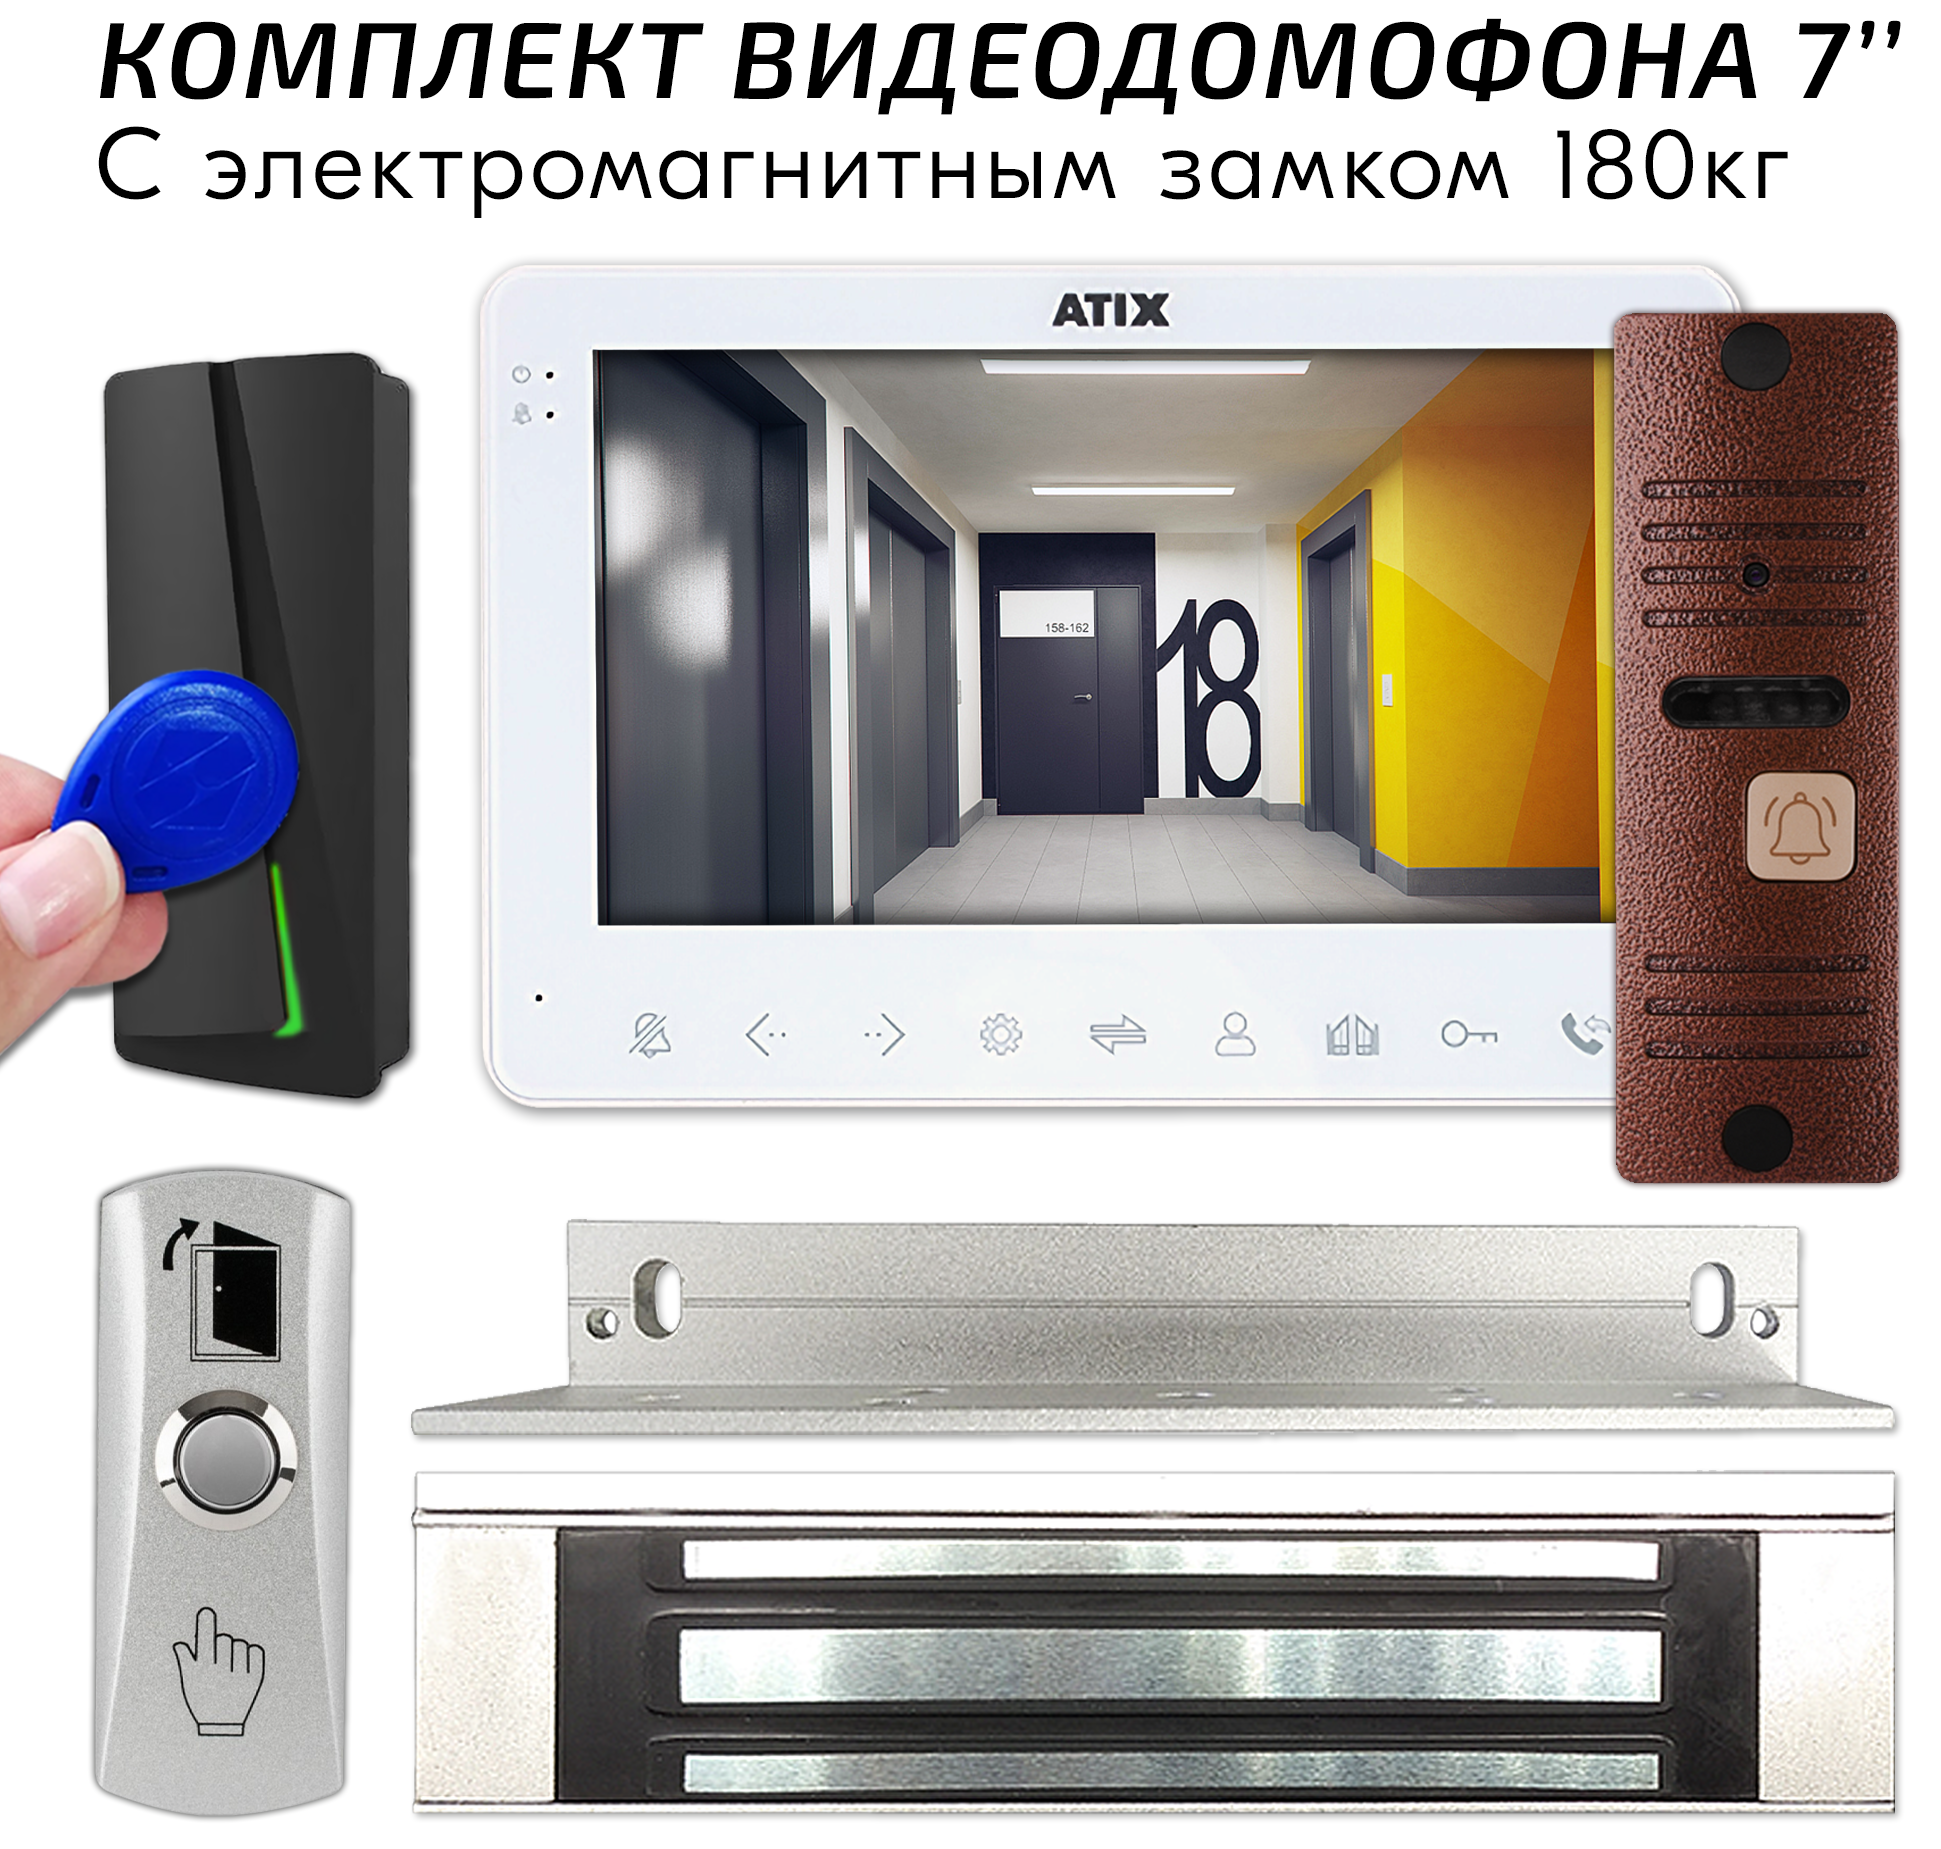 Комплект видеодомофона для дома и офиса с цветным монитором 7" с электромагнитным замком 180кг - Белый